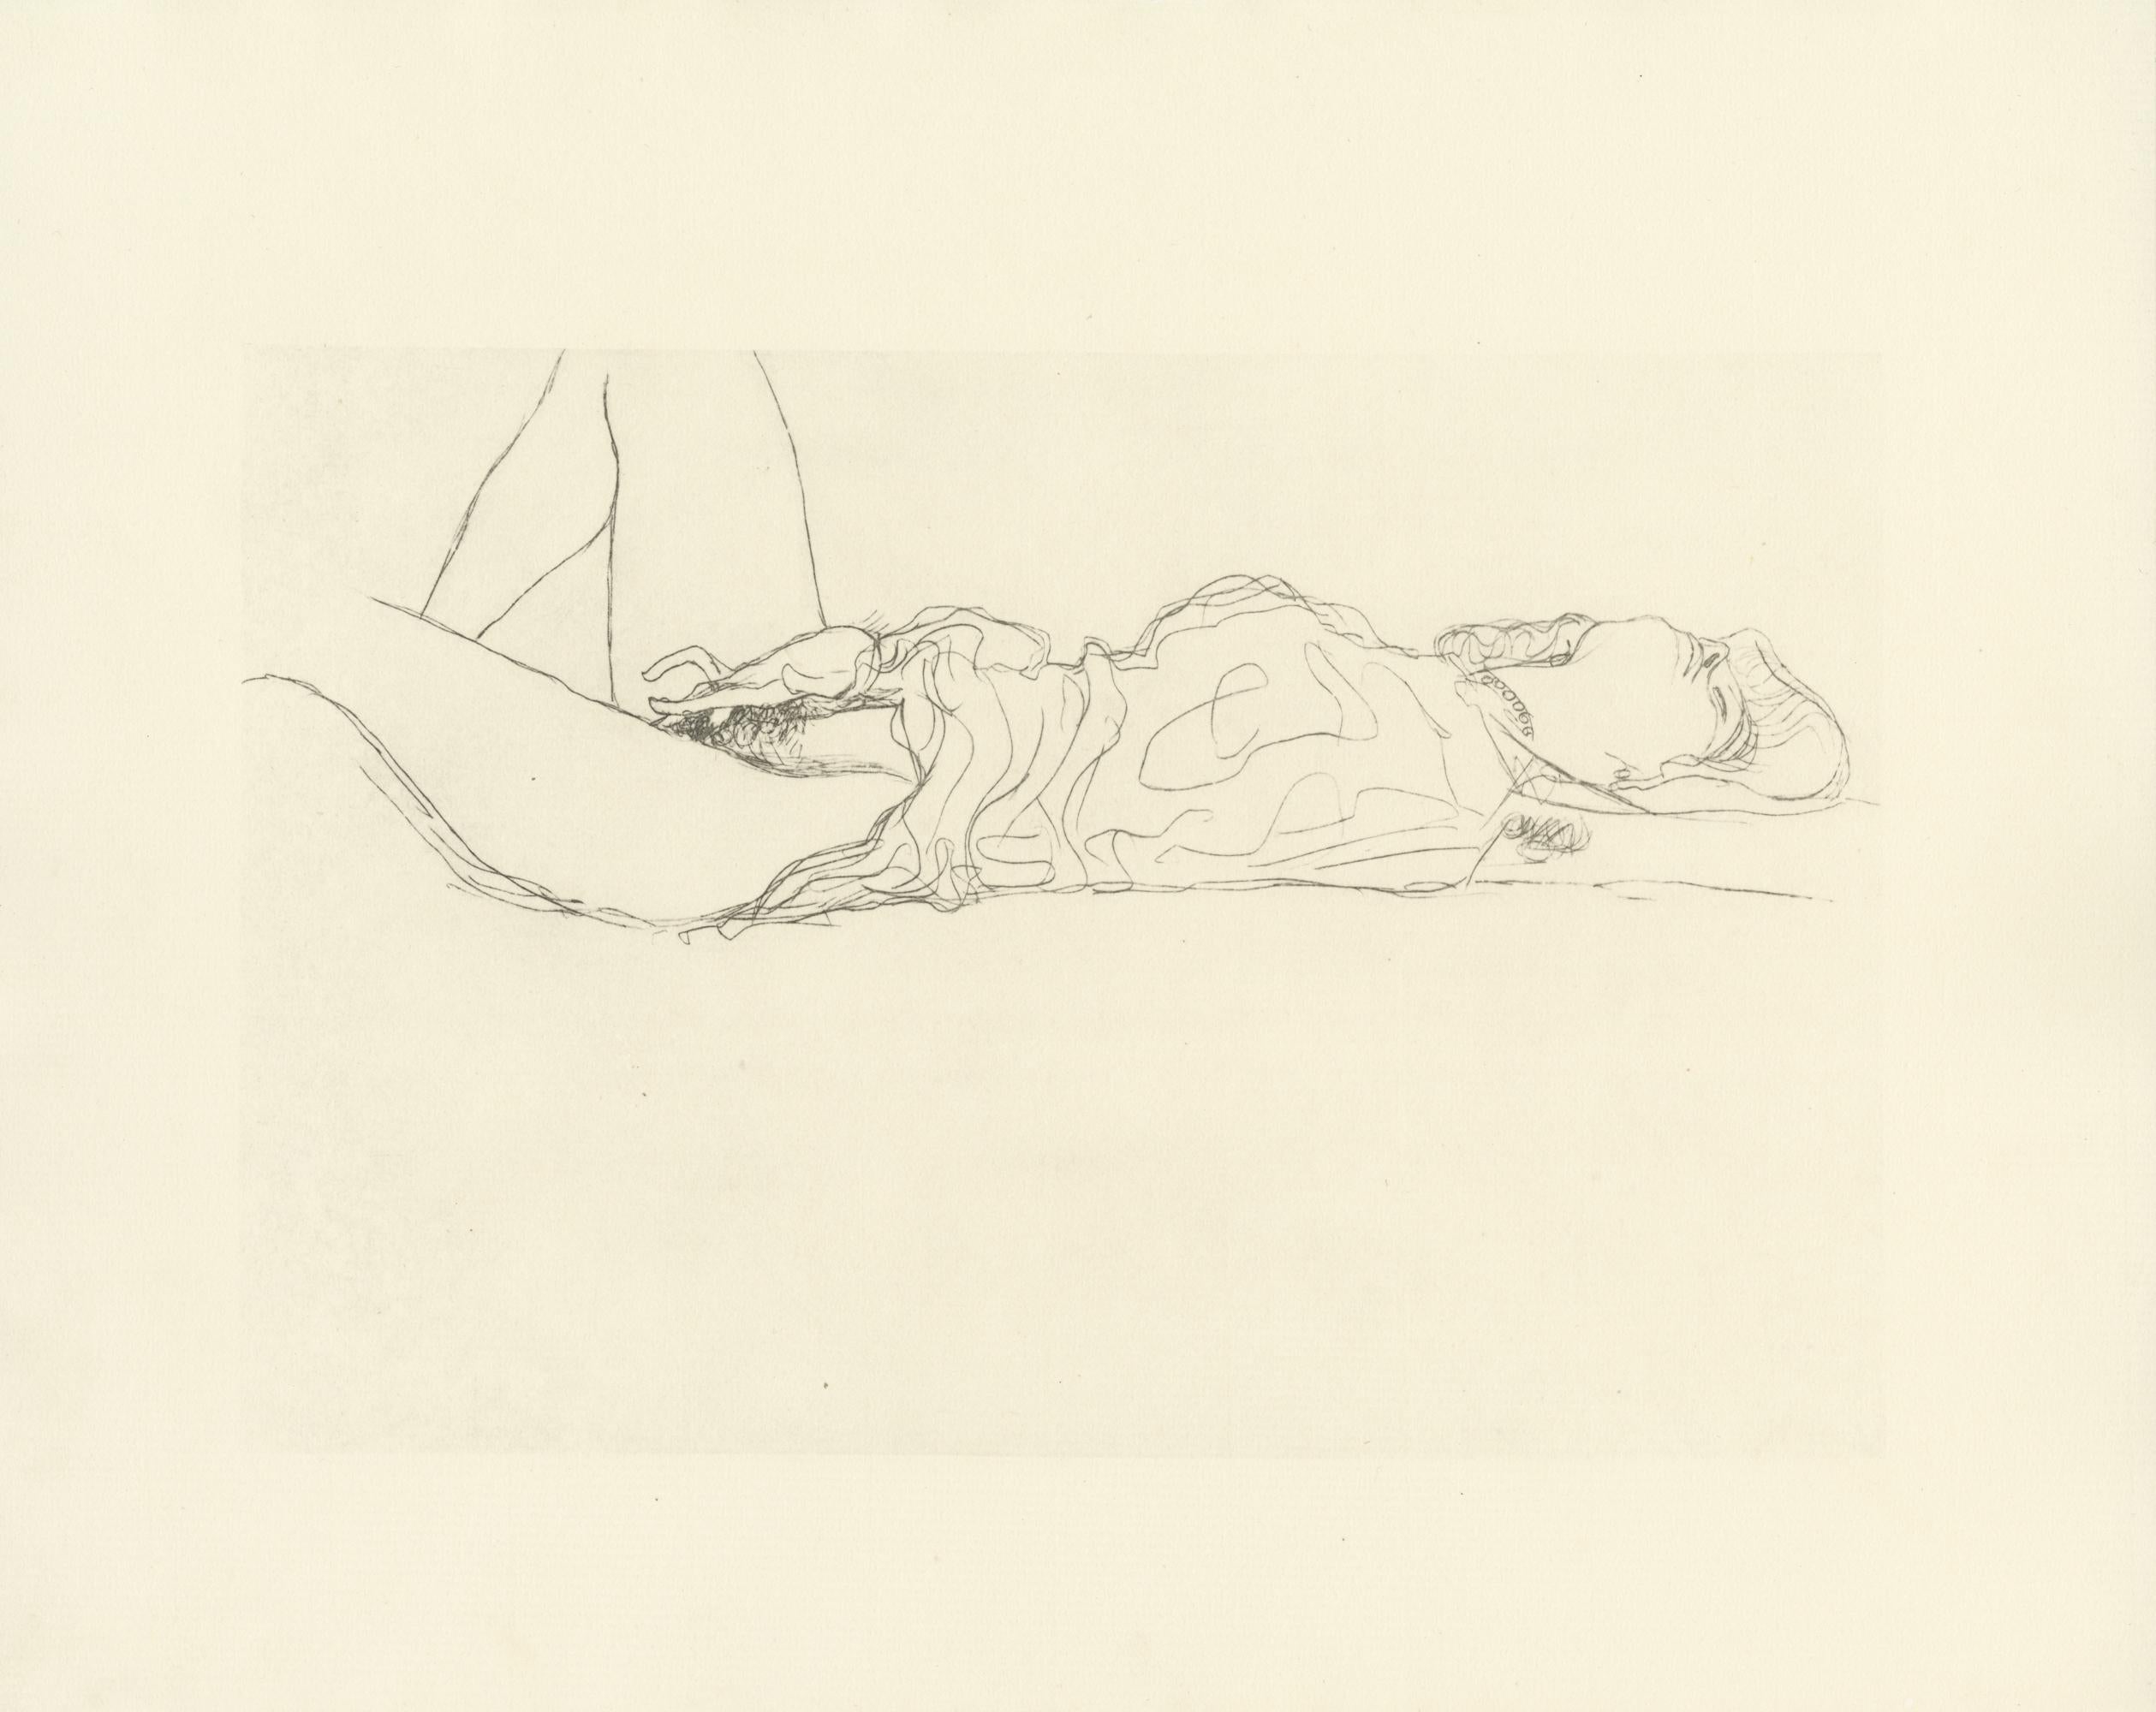 Blatt Nr. 9 aus Gustav Klimts 1907 entstandener Mappe "Dialoge der Kurtisanen", bestehend aus 15 Lichtdrucken auf cremefarbenem Japonpapier. Die Zeichnungen in diesem Folianten gelten als Studien für Klimts bekannte Wasserschlangenbilder. 

Dieser